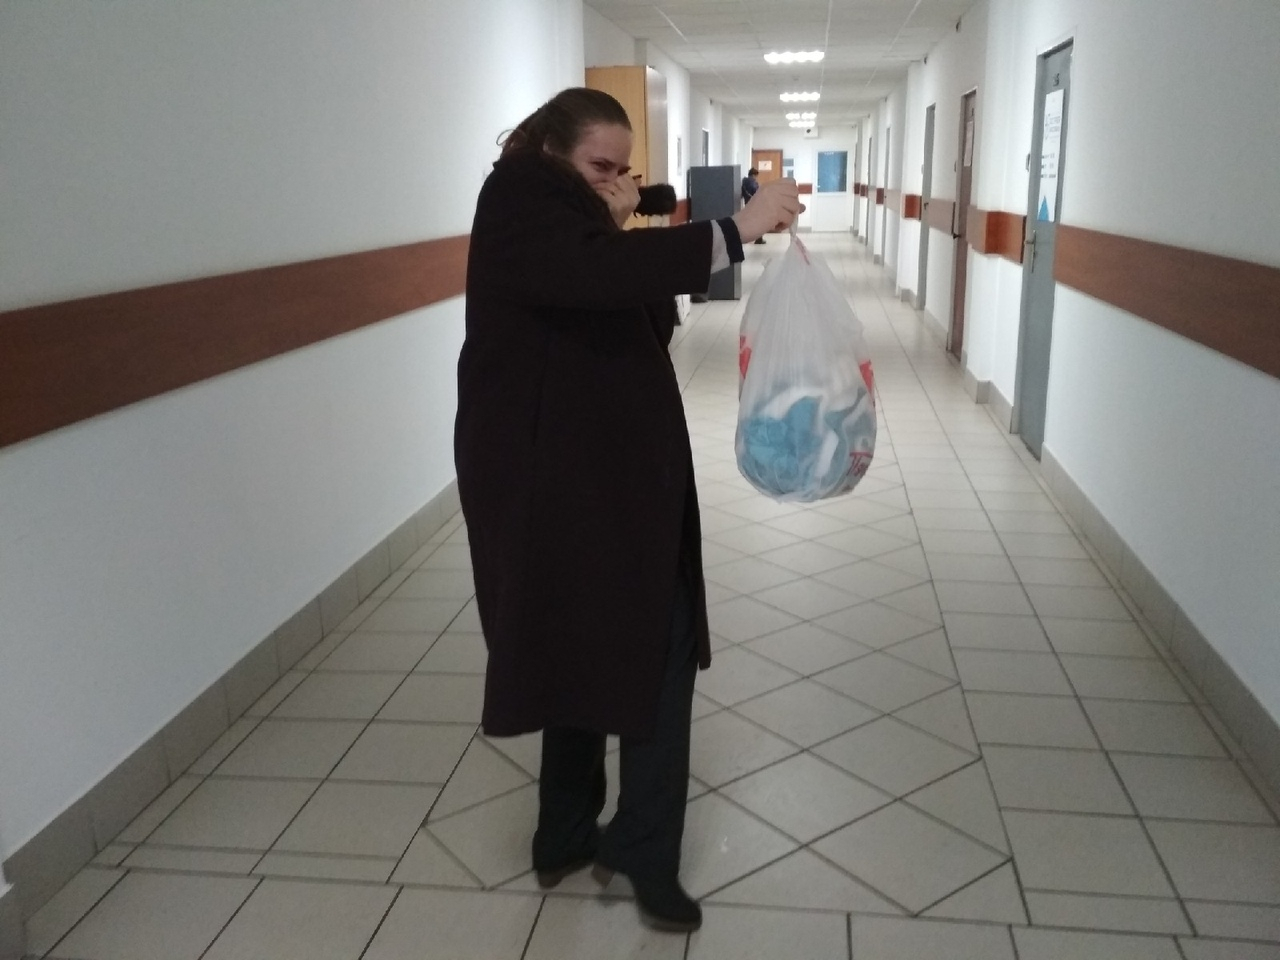 "Тырим пакеты на кассе": лайфхаками по выживанию поделились жители Ярославля